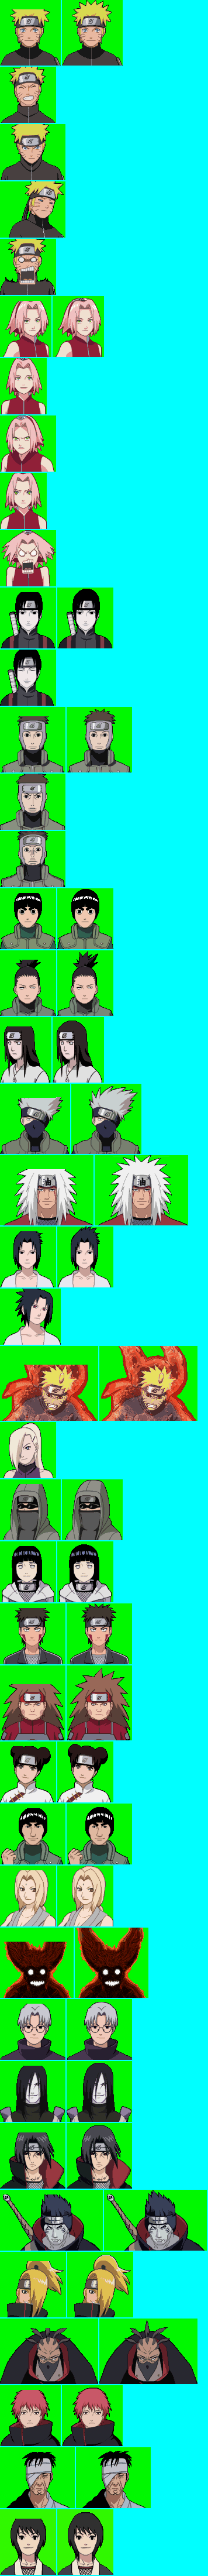 Naruto Shippuden; Naruto vs. Sasuke - Mugshots